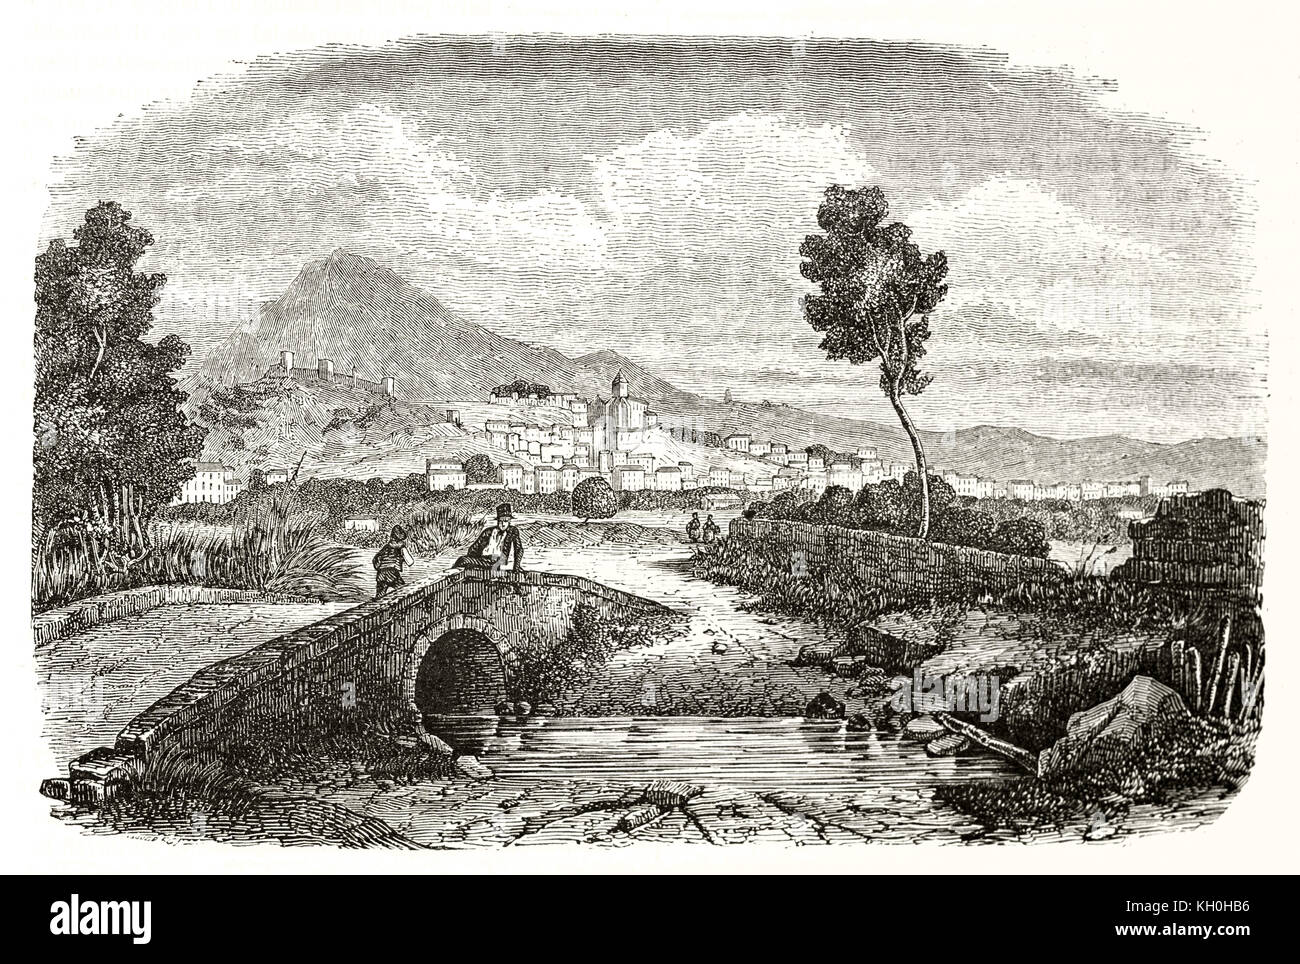 Vecchio vista di hyeres, Francia. Da Denis, publ. su Magasin pittoresco, Parigi, 1847 Foto Stock